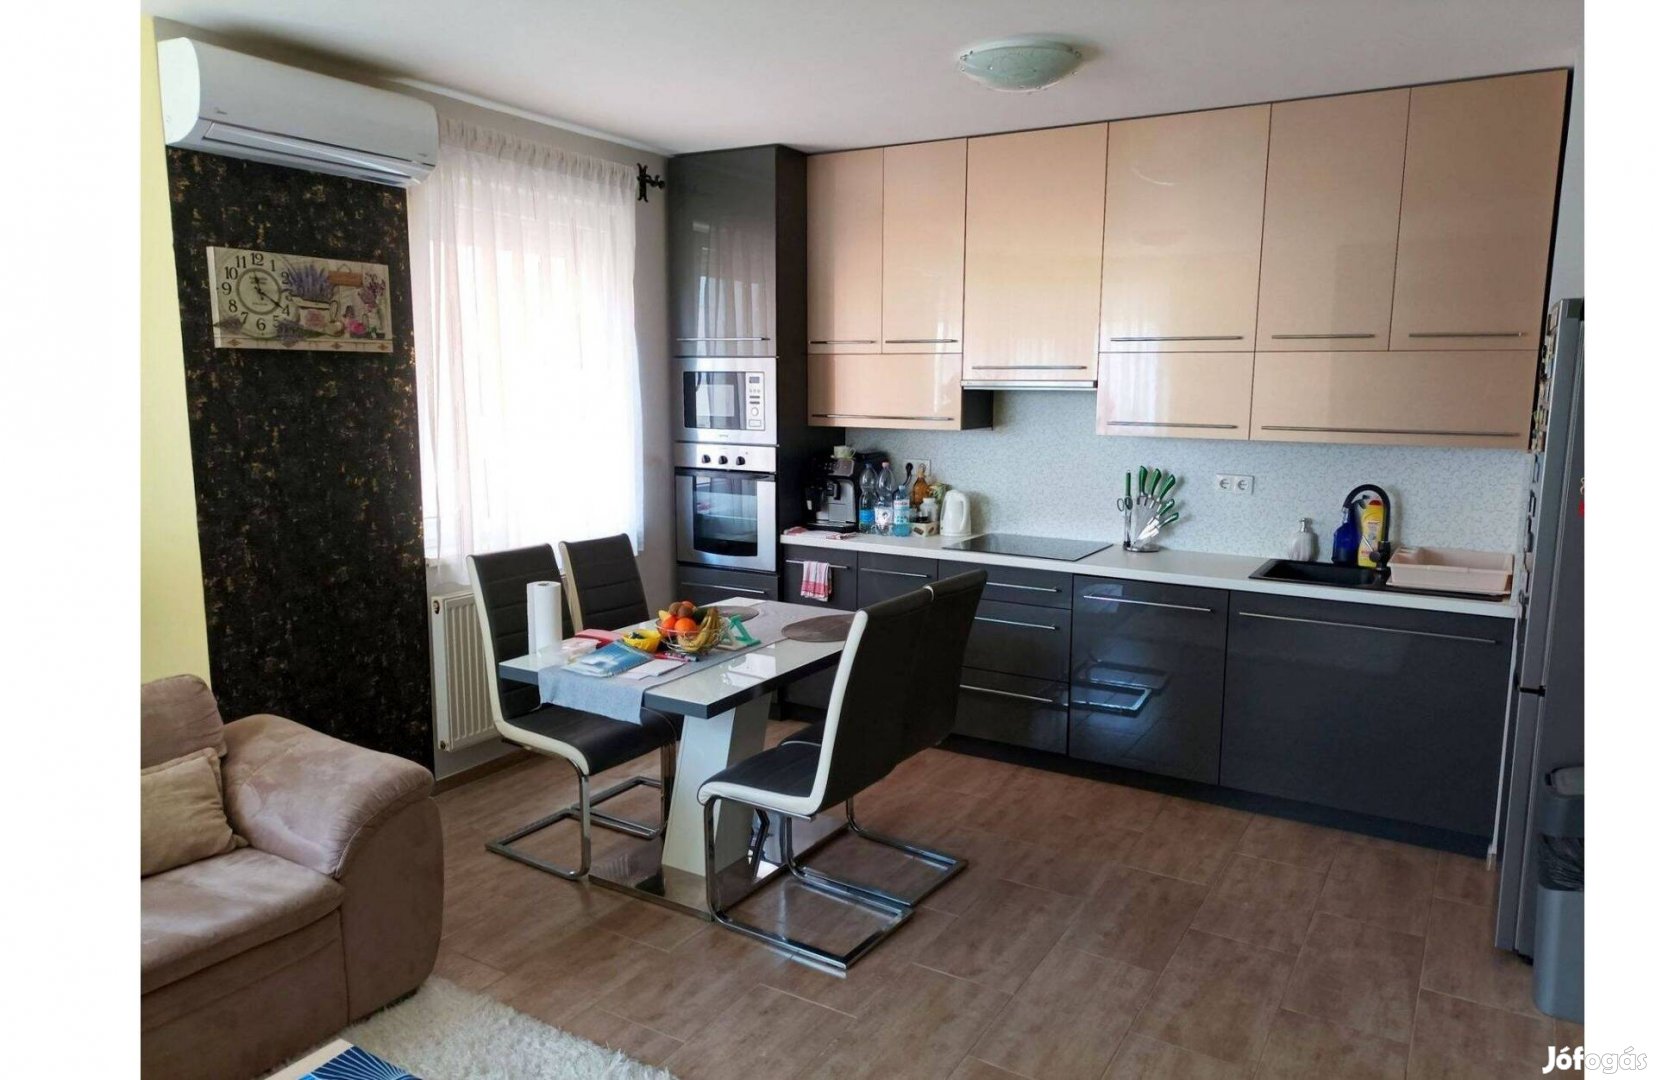 Debrecen Füredi kapuban 65 m2 -es, felújított lakás eladó!